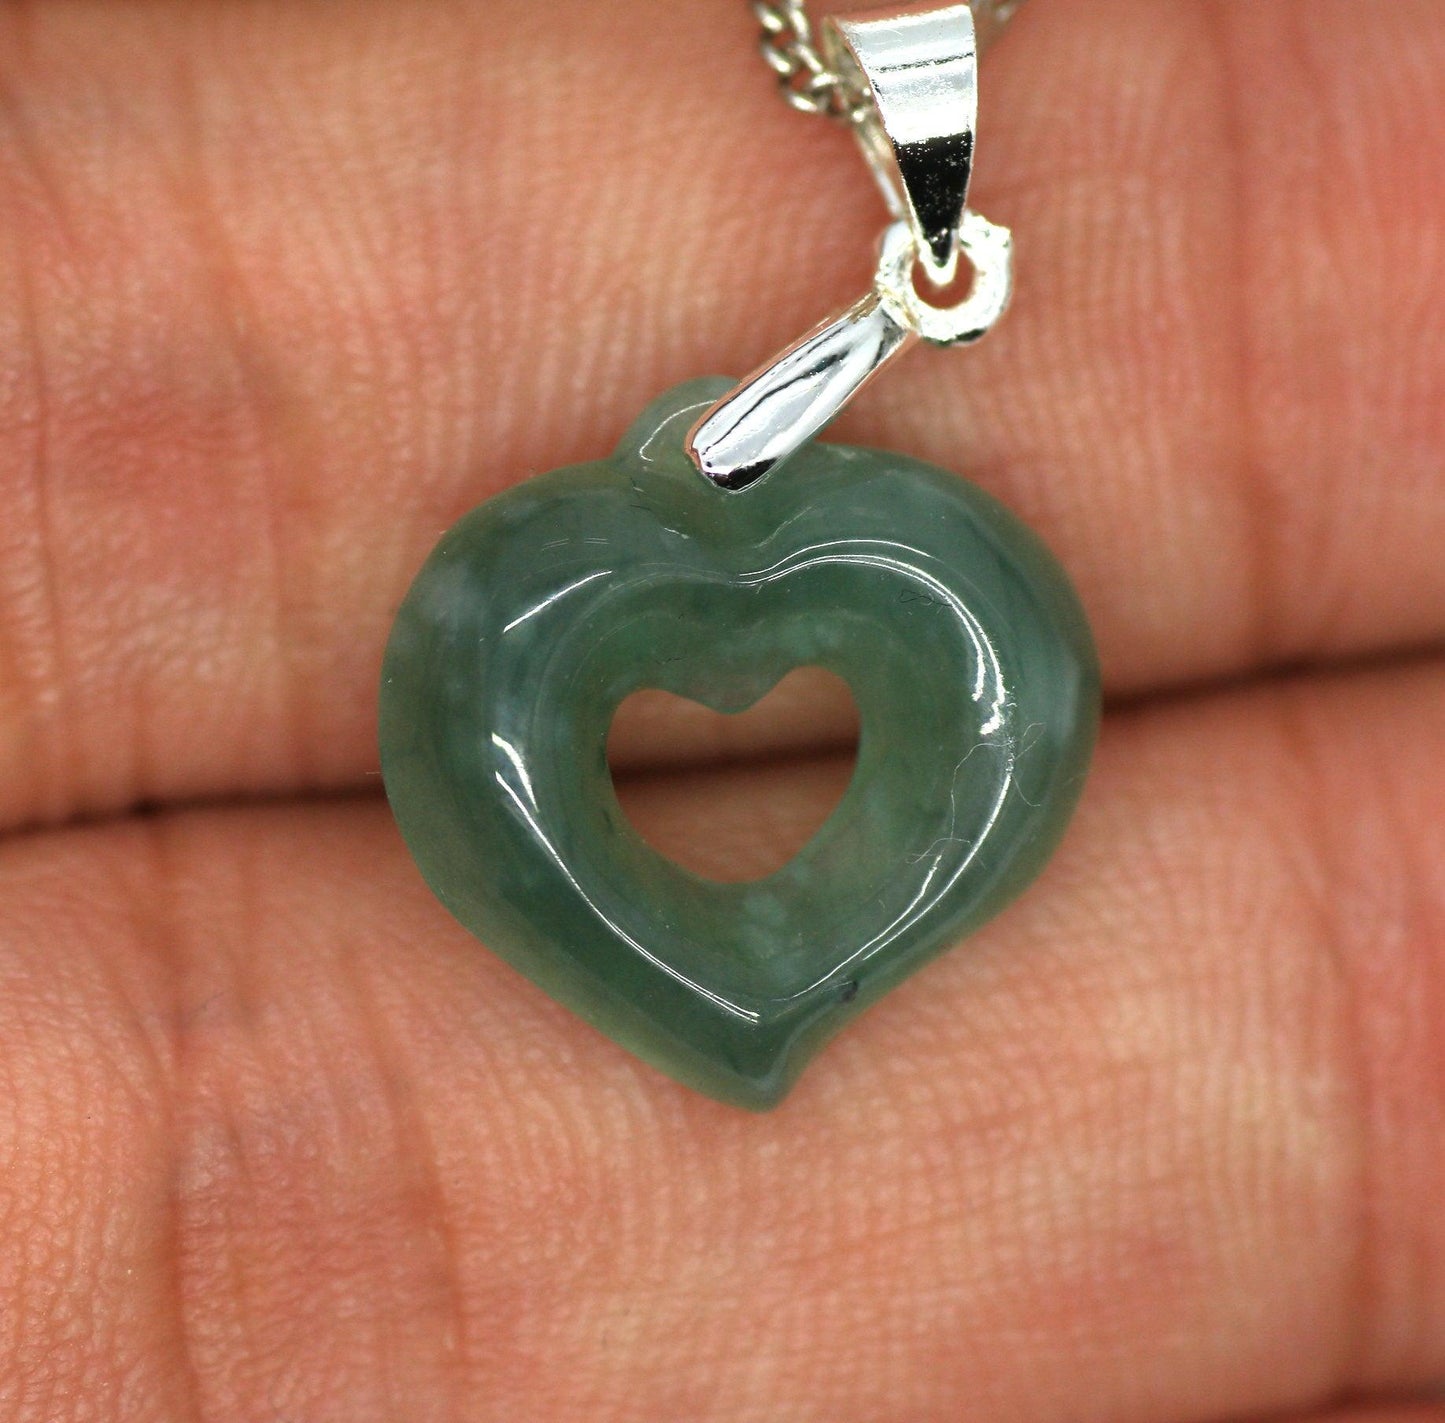 Type A Jadeite Jade Mini Heart Pendants